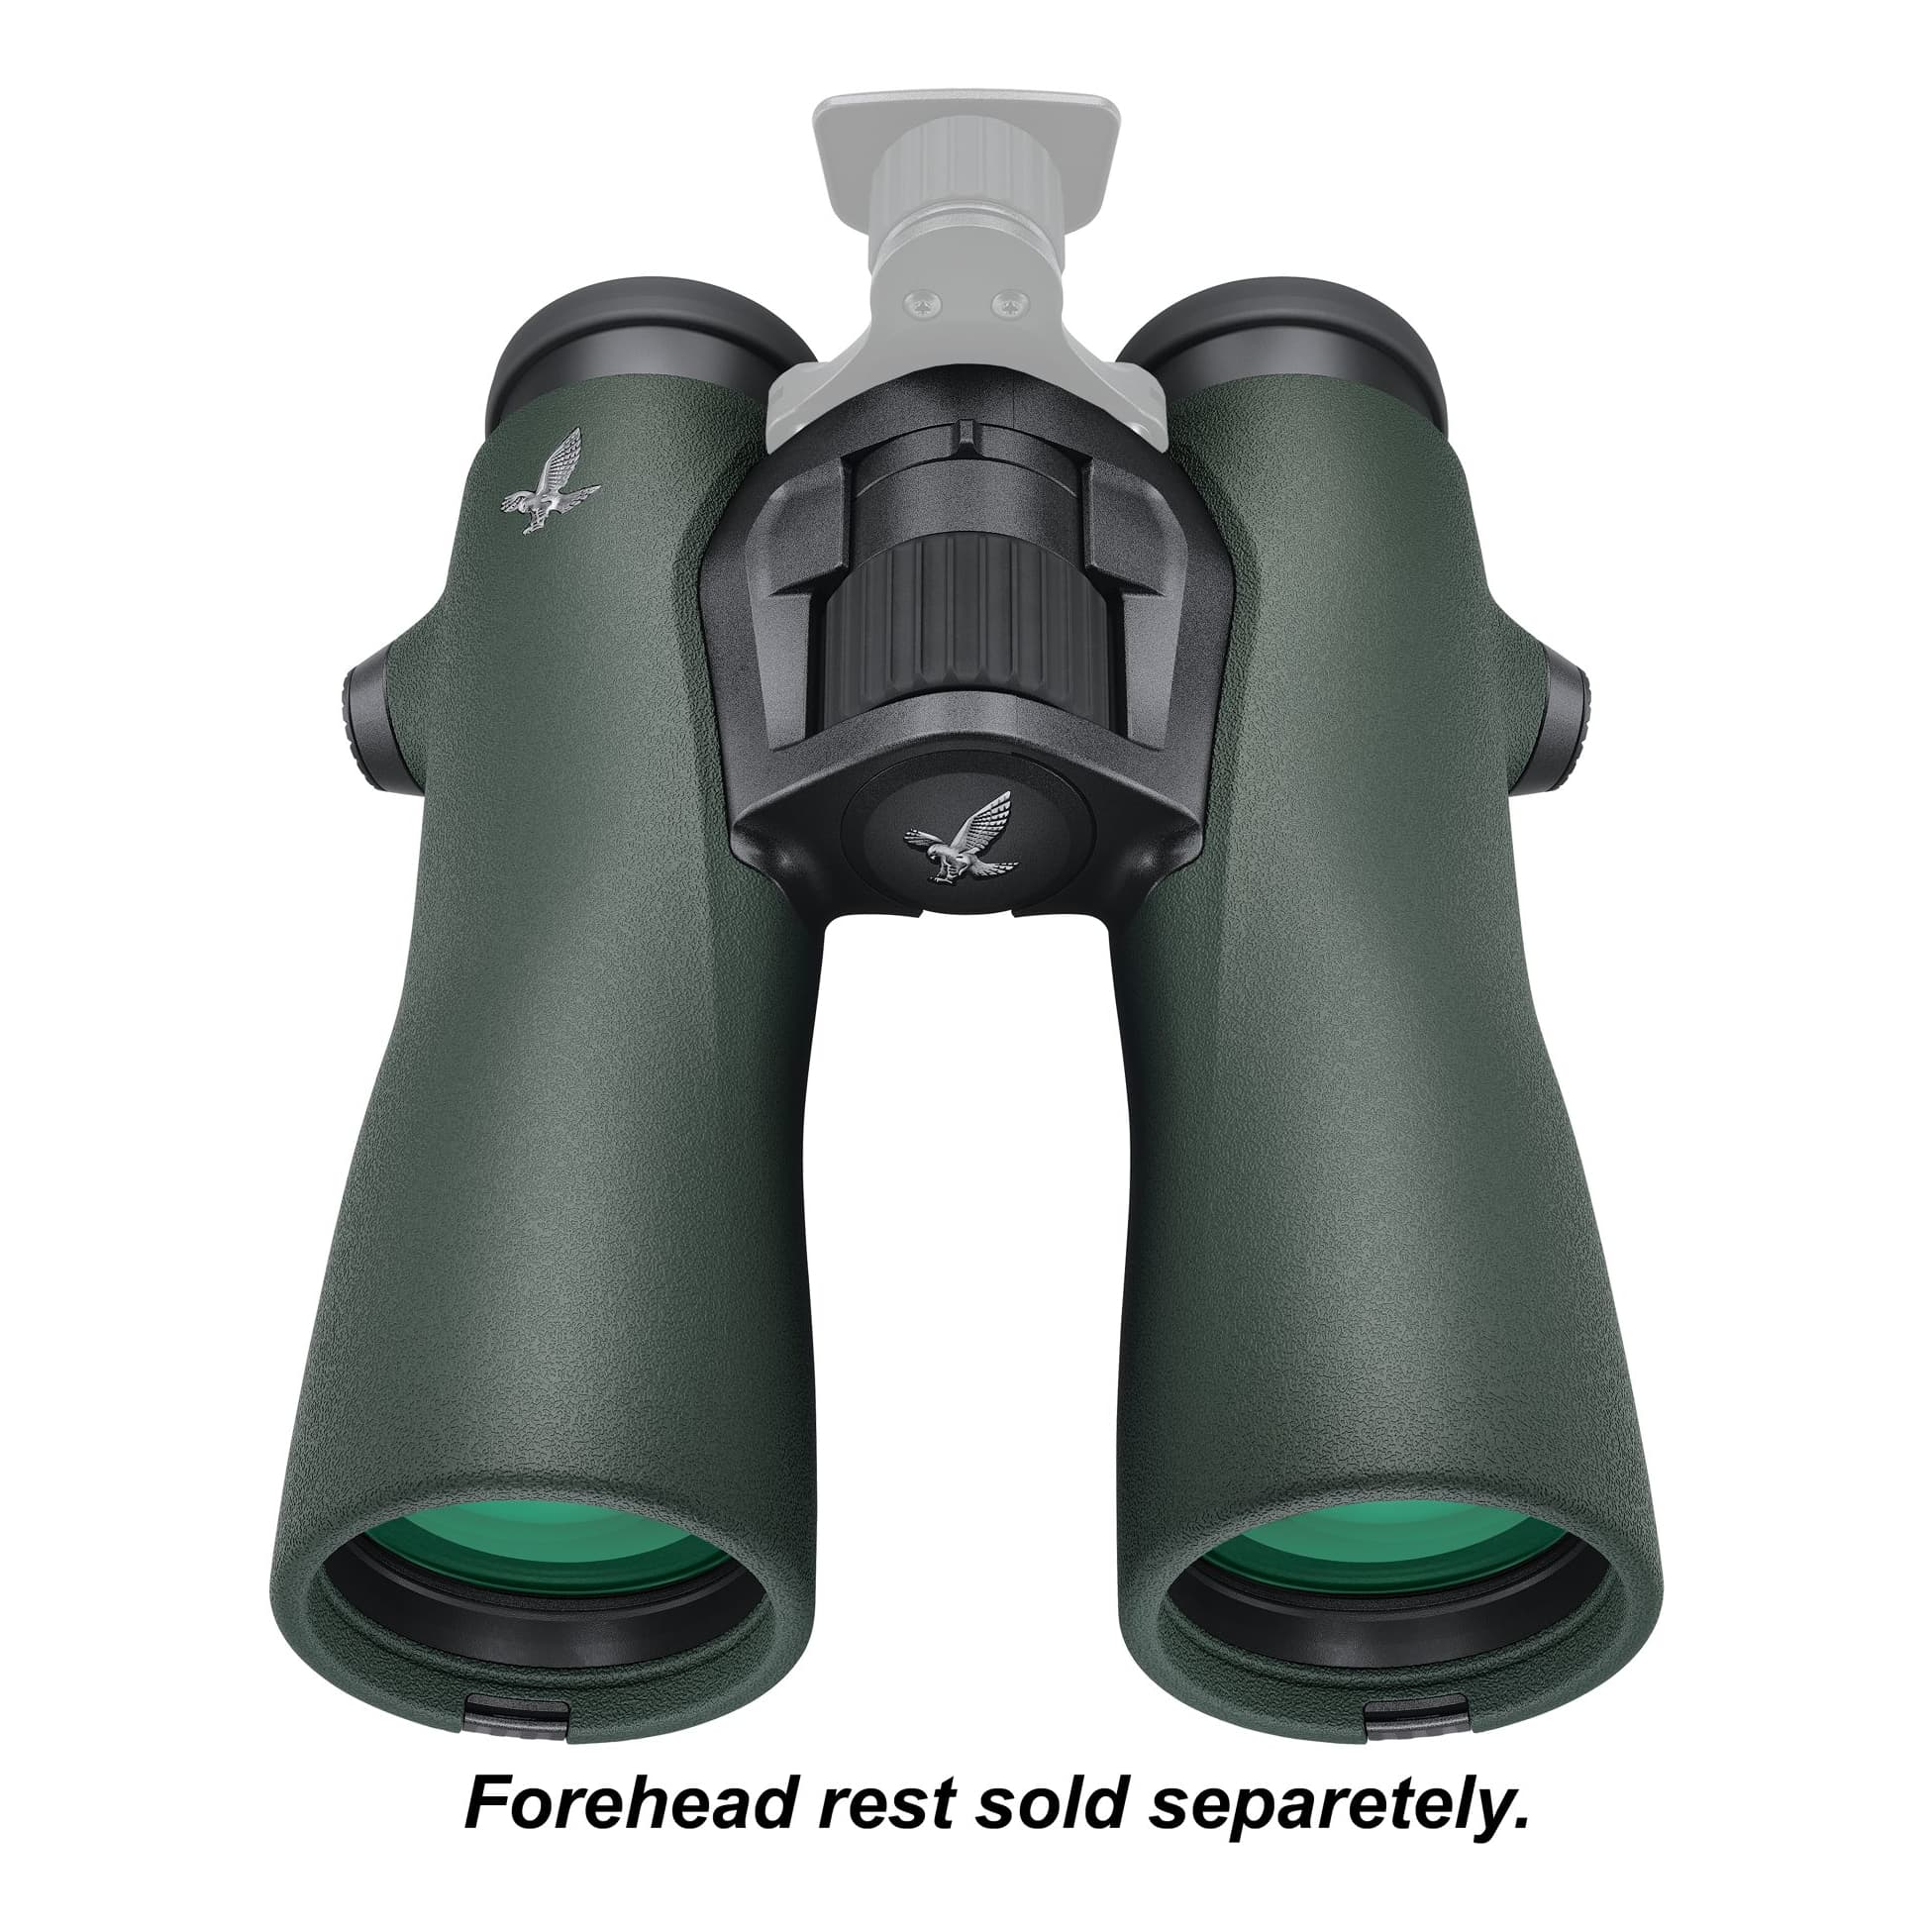 Swarovski® NL Pure Binoculars - 10x42mm